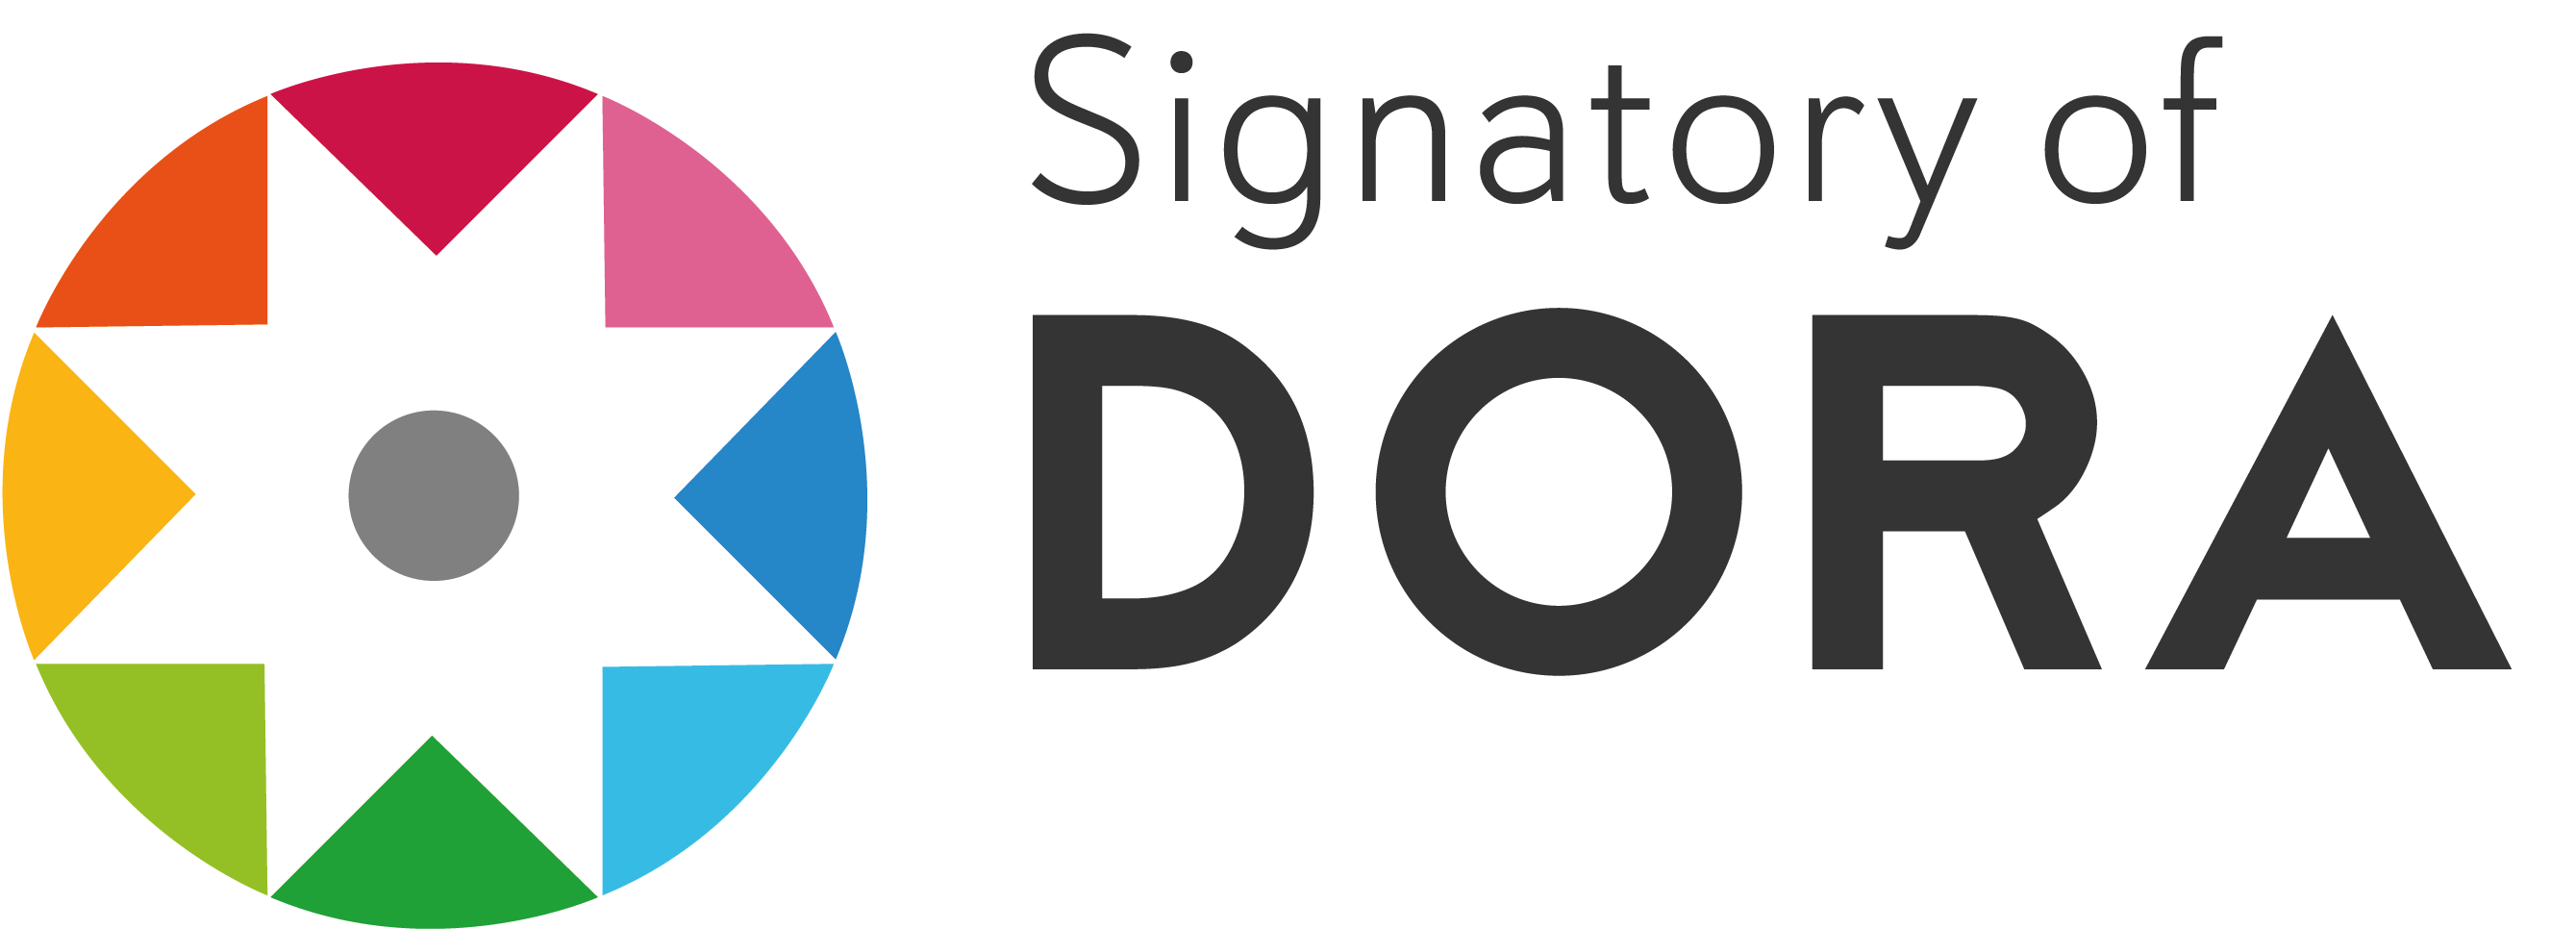 Signatory of Dora logo